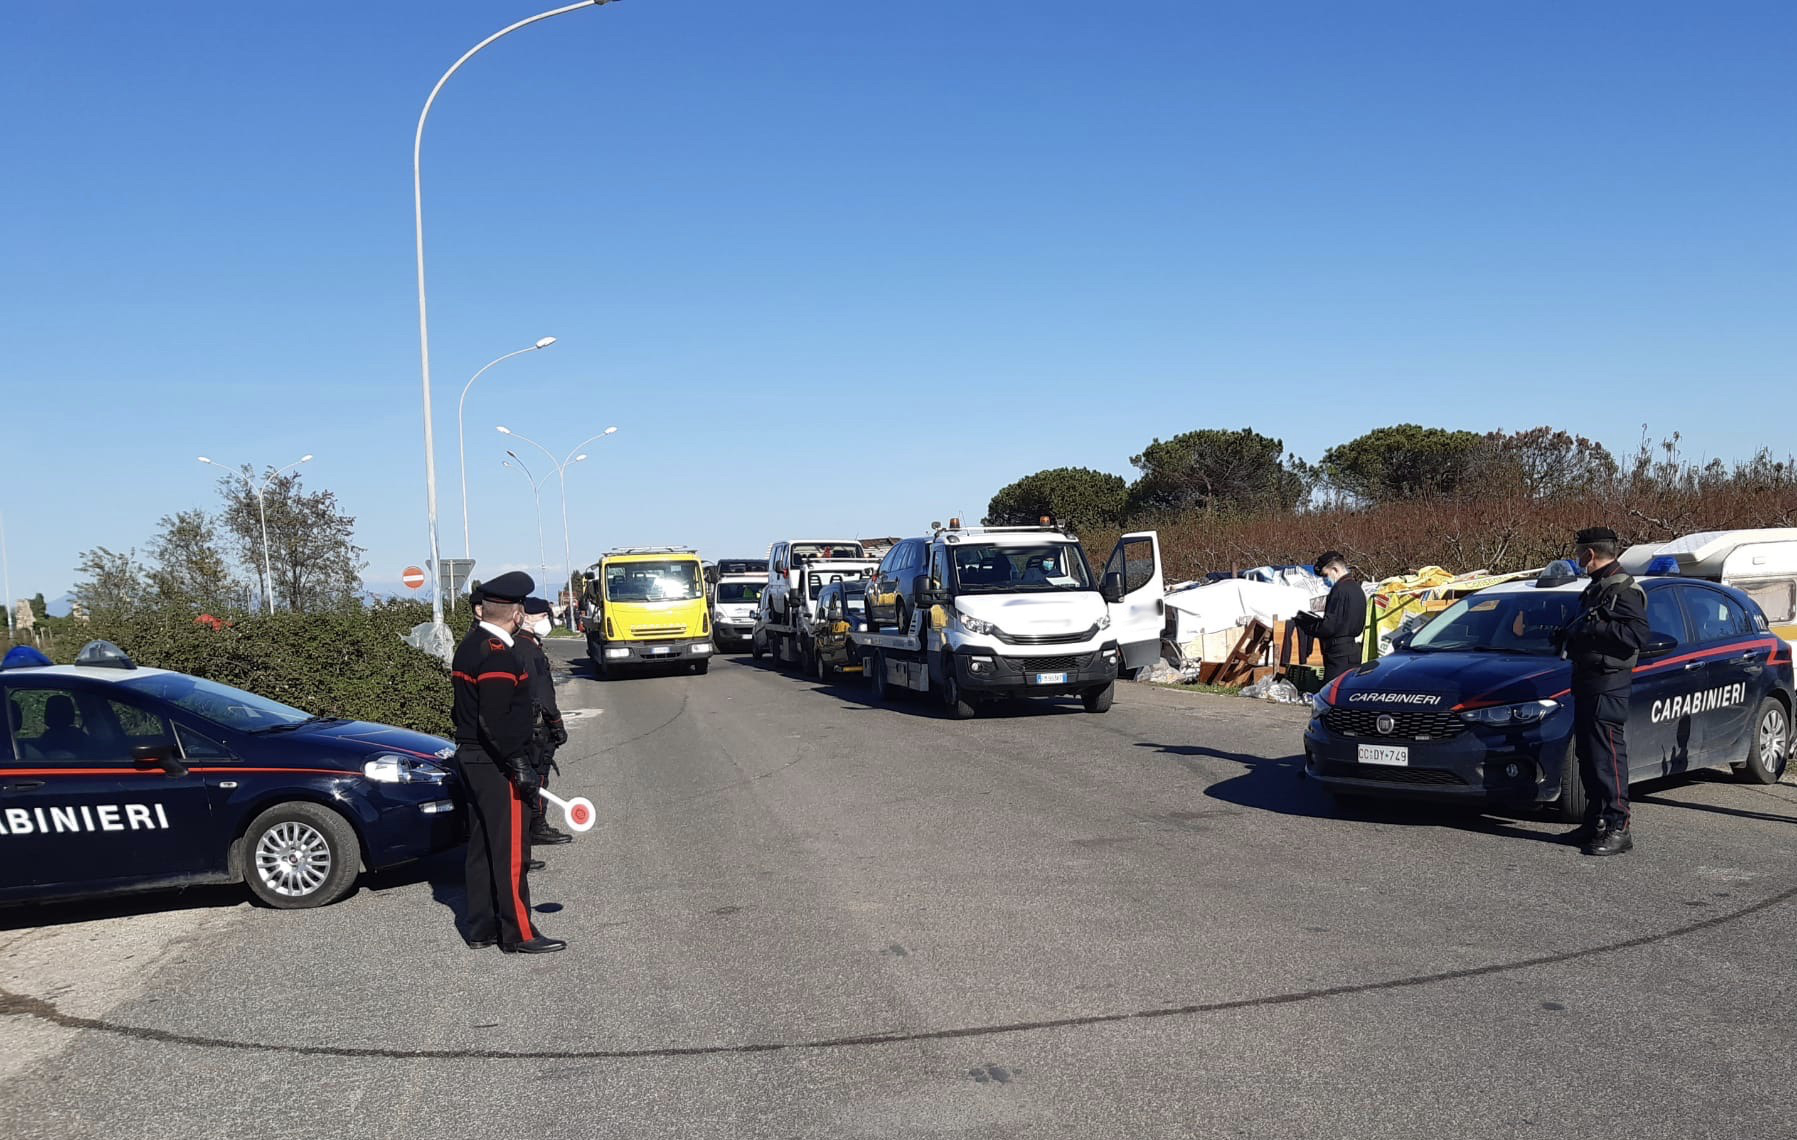 Auto senza assicurazione, sequestrati 7 veicoli al campo rom di Giugliano